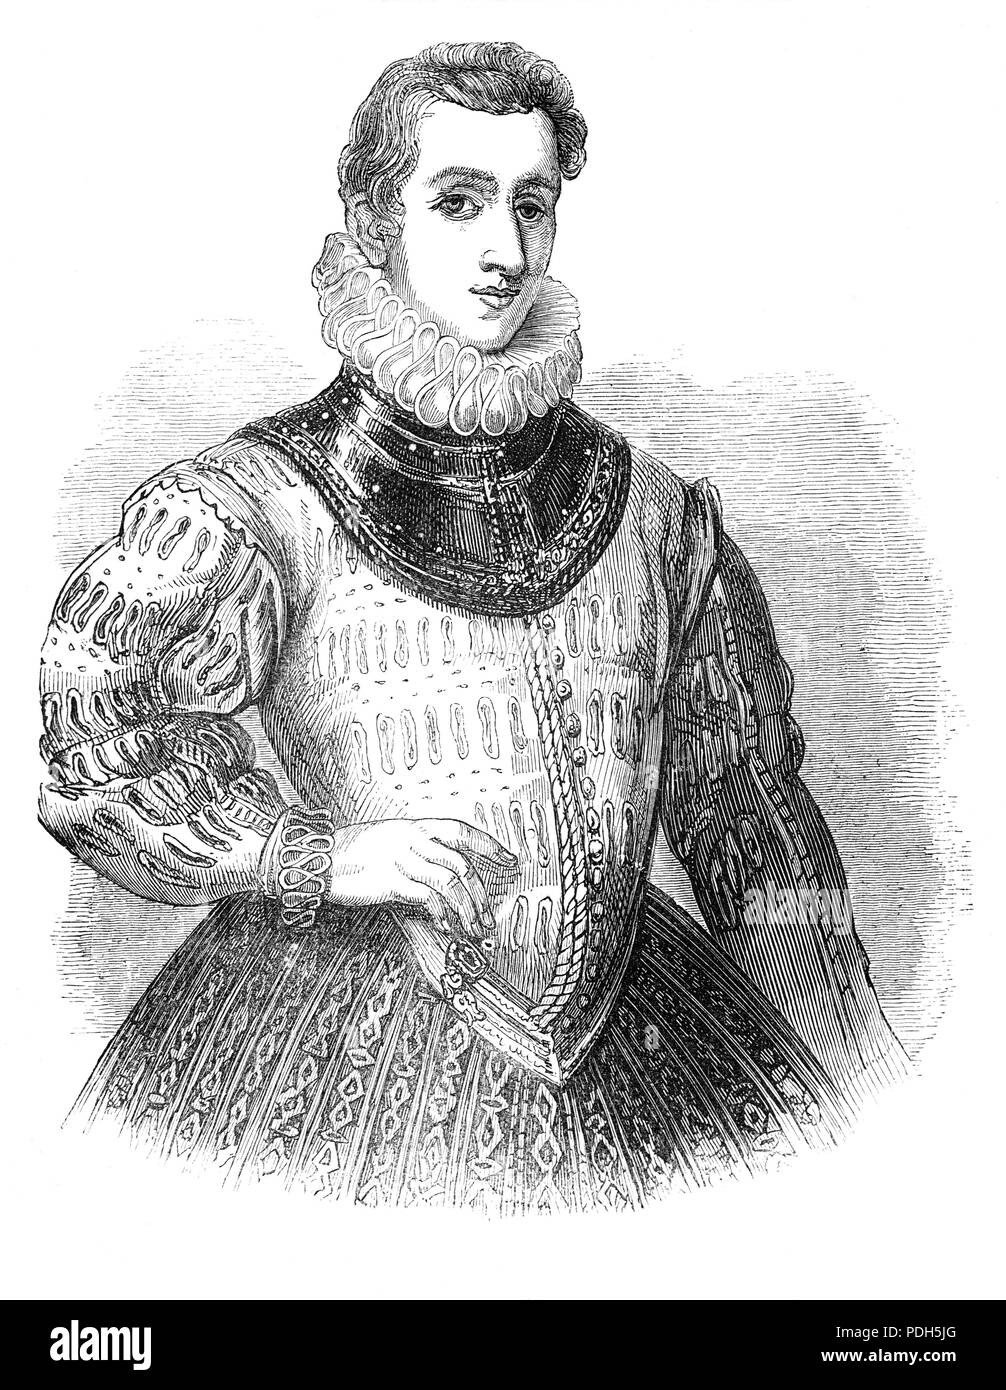 Sir Philip Sidney (1554-1586) était un poète anglais, courtisan, érudit et soldat, dans les mémoires comme l'une des figures les plus importantes de l'âge élisabéthain. Ses œuvres comprennent Astrophel et Stella, la défense de la poésie (également connu sous le nom de la défense de la poésie ou des excuses pour la poésie), et la Comtesse de Pembroke's Arcadia. Aux Pays-Bas, il a toujours demandé avec audace sur son supérieur, son oncle, le comte de Leicester. Au cours de la bataille de Zutphen en 1586, il a été blessé à la cuisse et est mort de la gangrène 26 jours plus tard, à l'âge de 31 ans. Banque D'Images